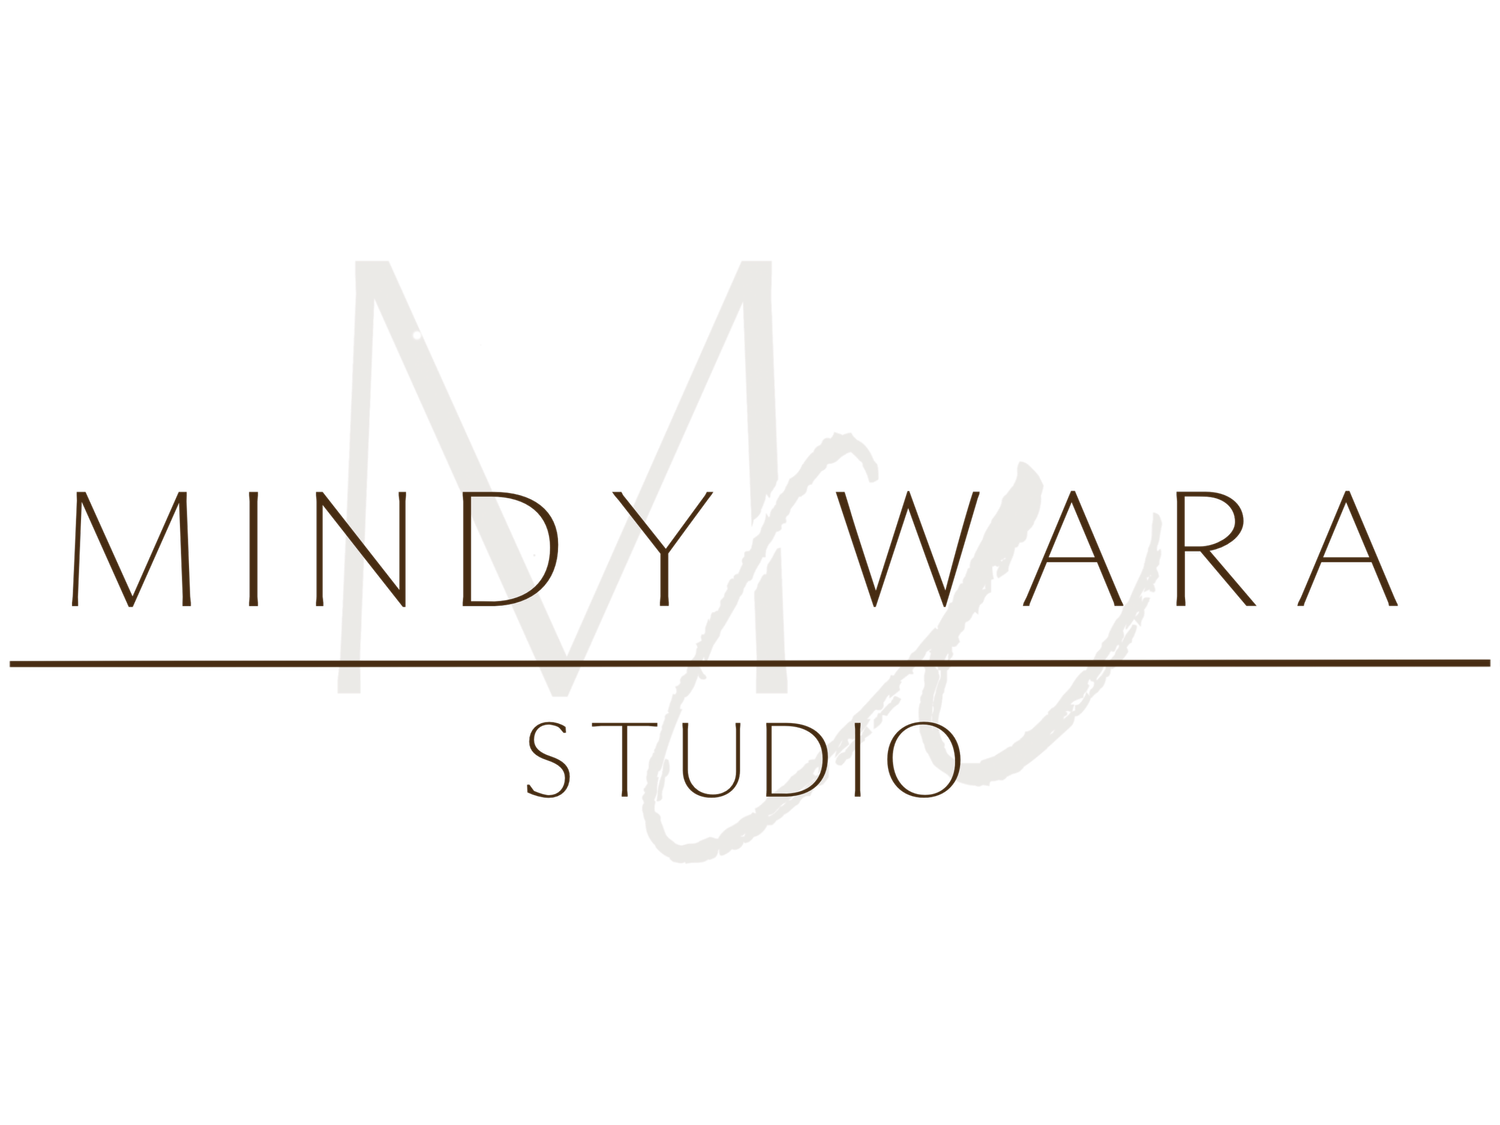 Mindy Wara Studio